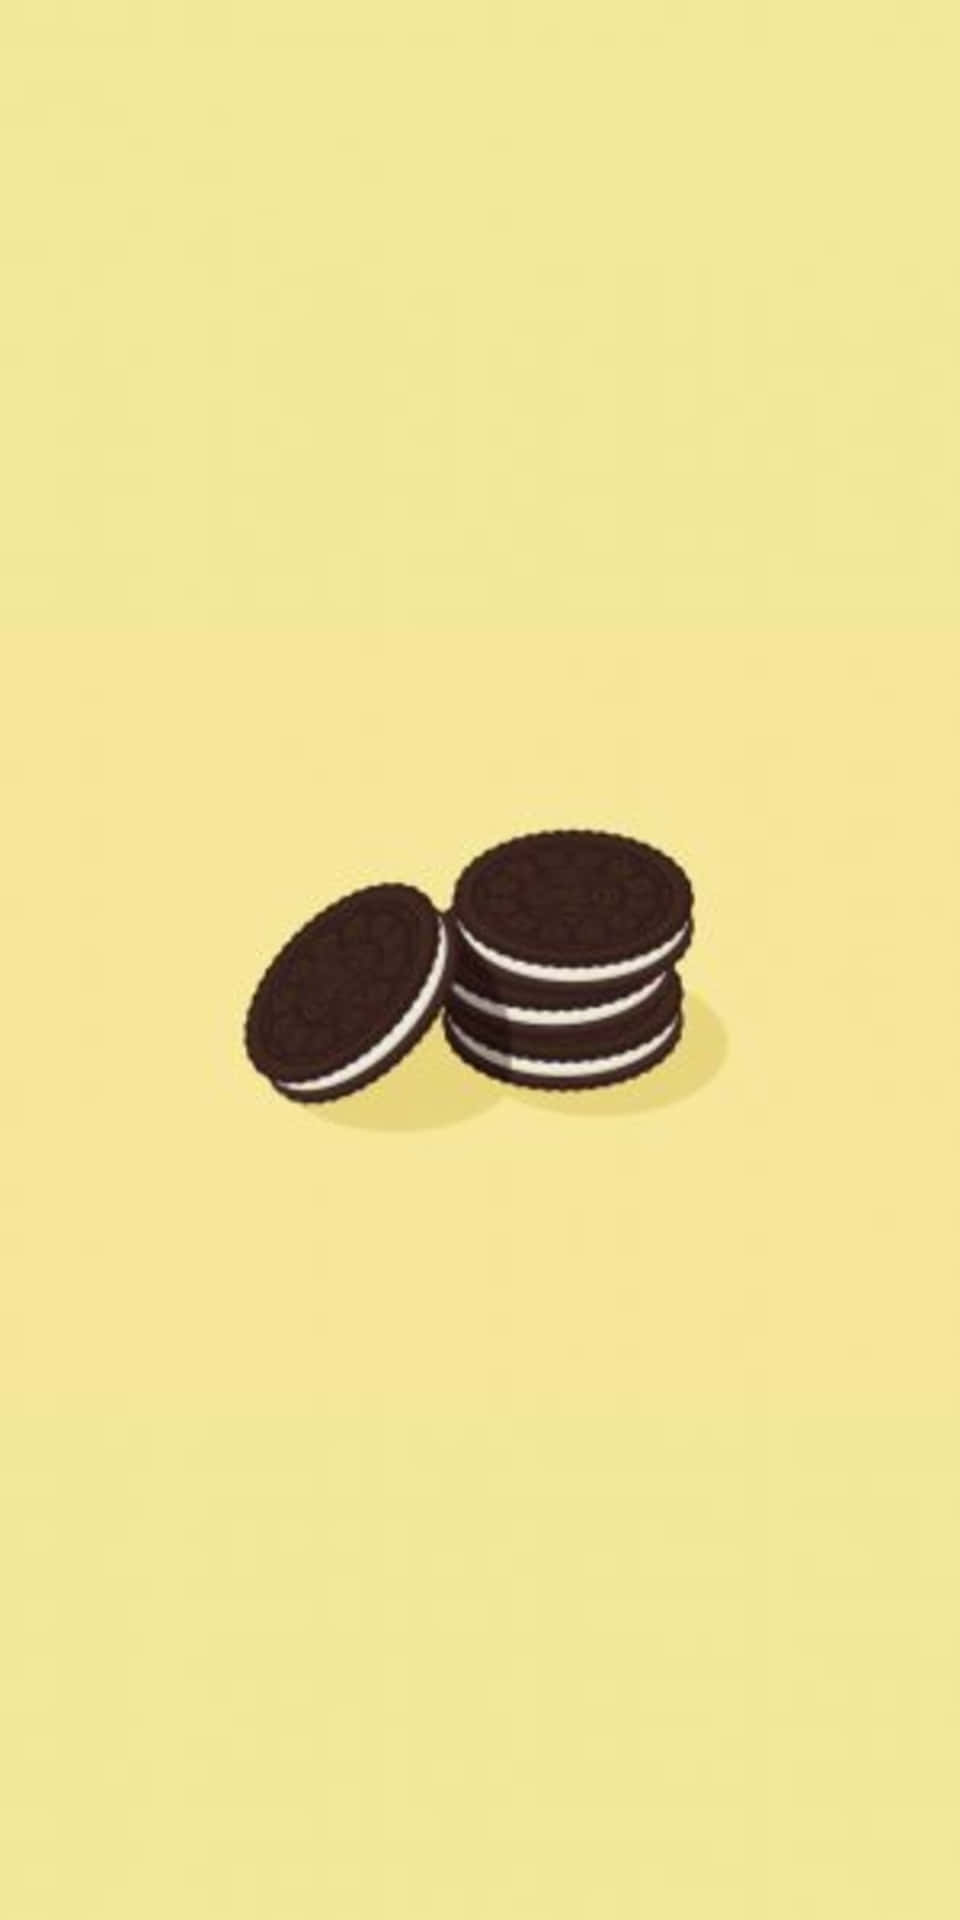 Pixel3 Minimaler Hintergrund Mit Oreo-keksen Auf Gelbem Hintergrund